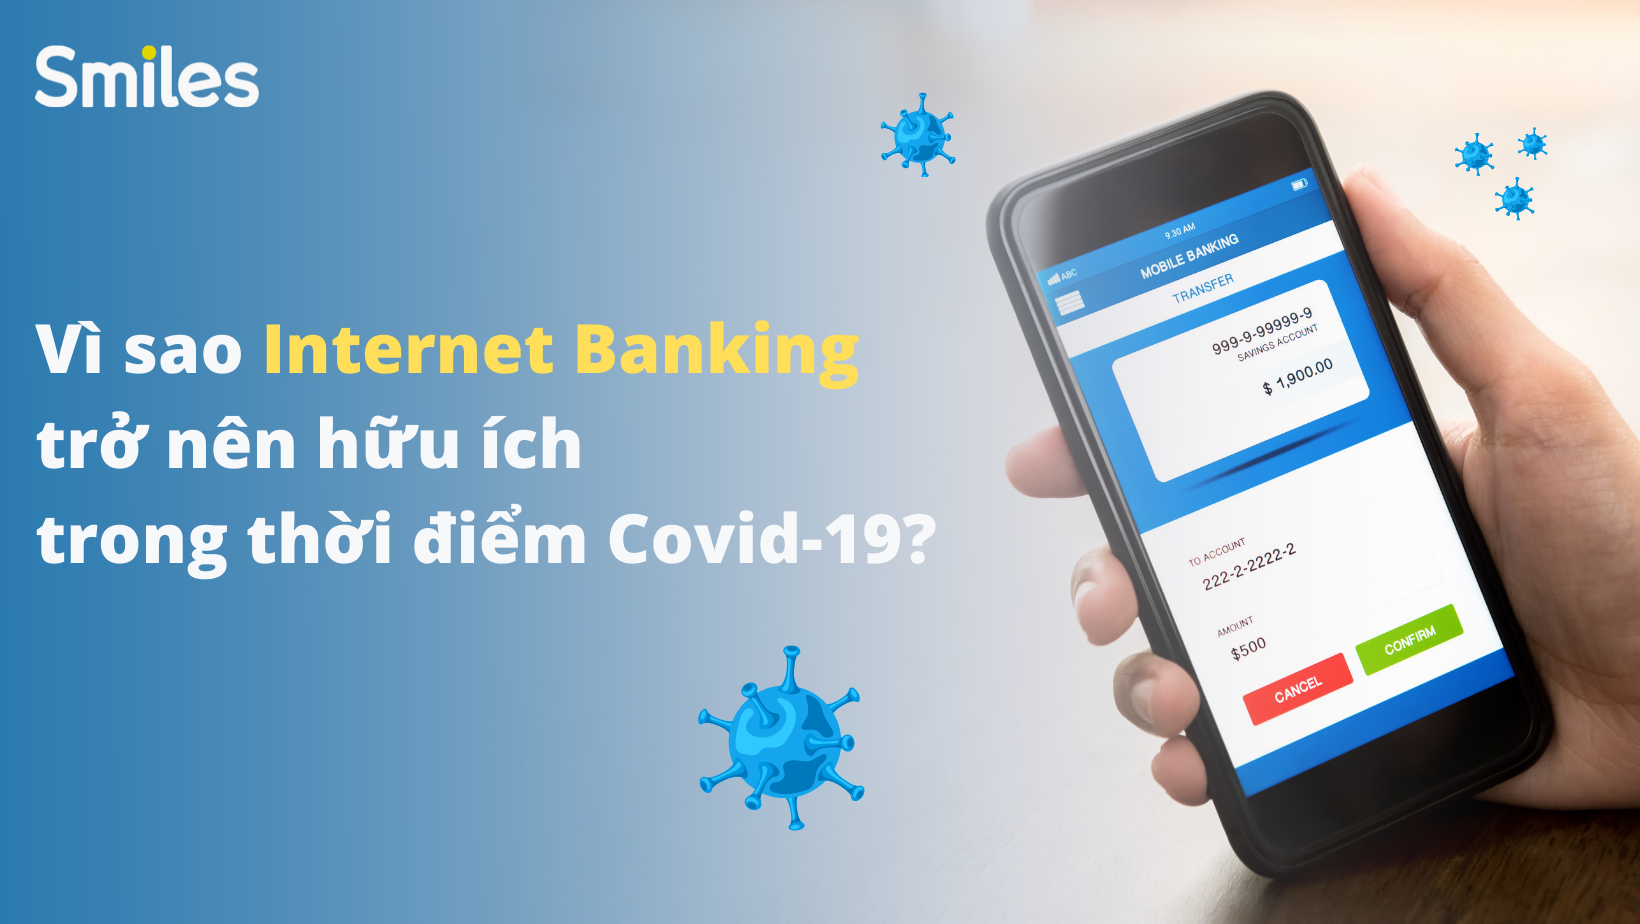 Vì sao nên dùng Internet banking trong đại dịch Covid-19?